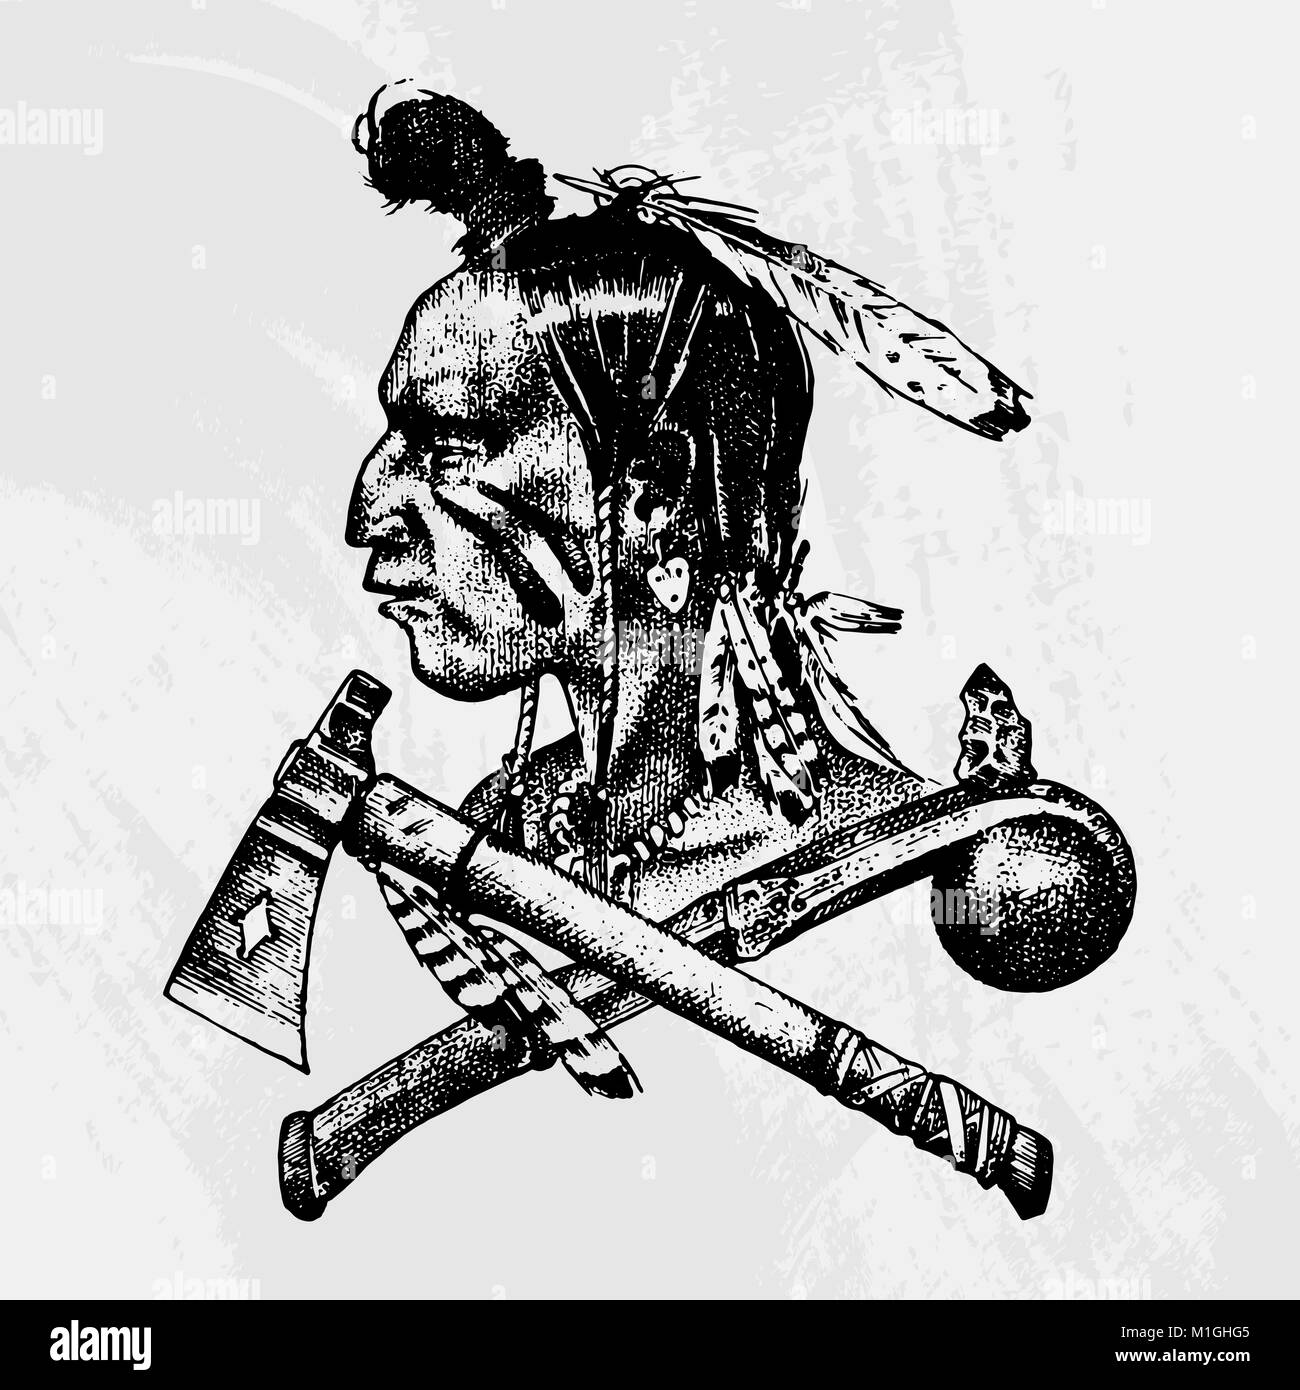 Nacional Americana y tradiciones nativas indias. Cuchillo y hacha,  herramientas e instrumentos. grabado dibujado a mano en el viejo sketch. Un  hombre con plumas en la cabeza. El emblema o logotipo Imagen